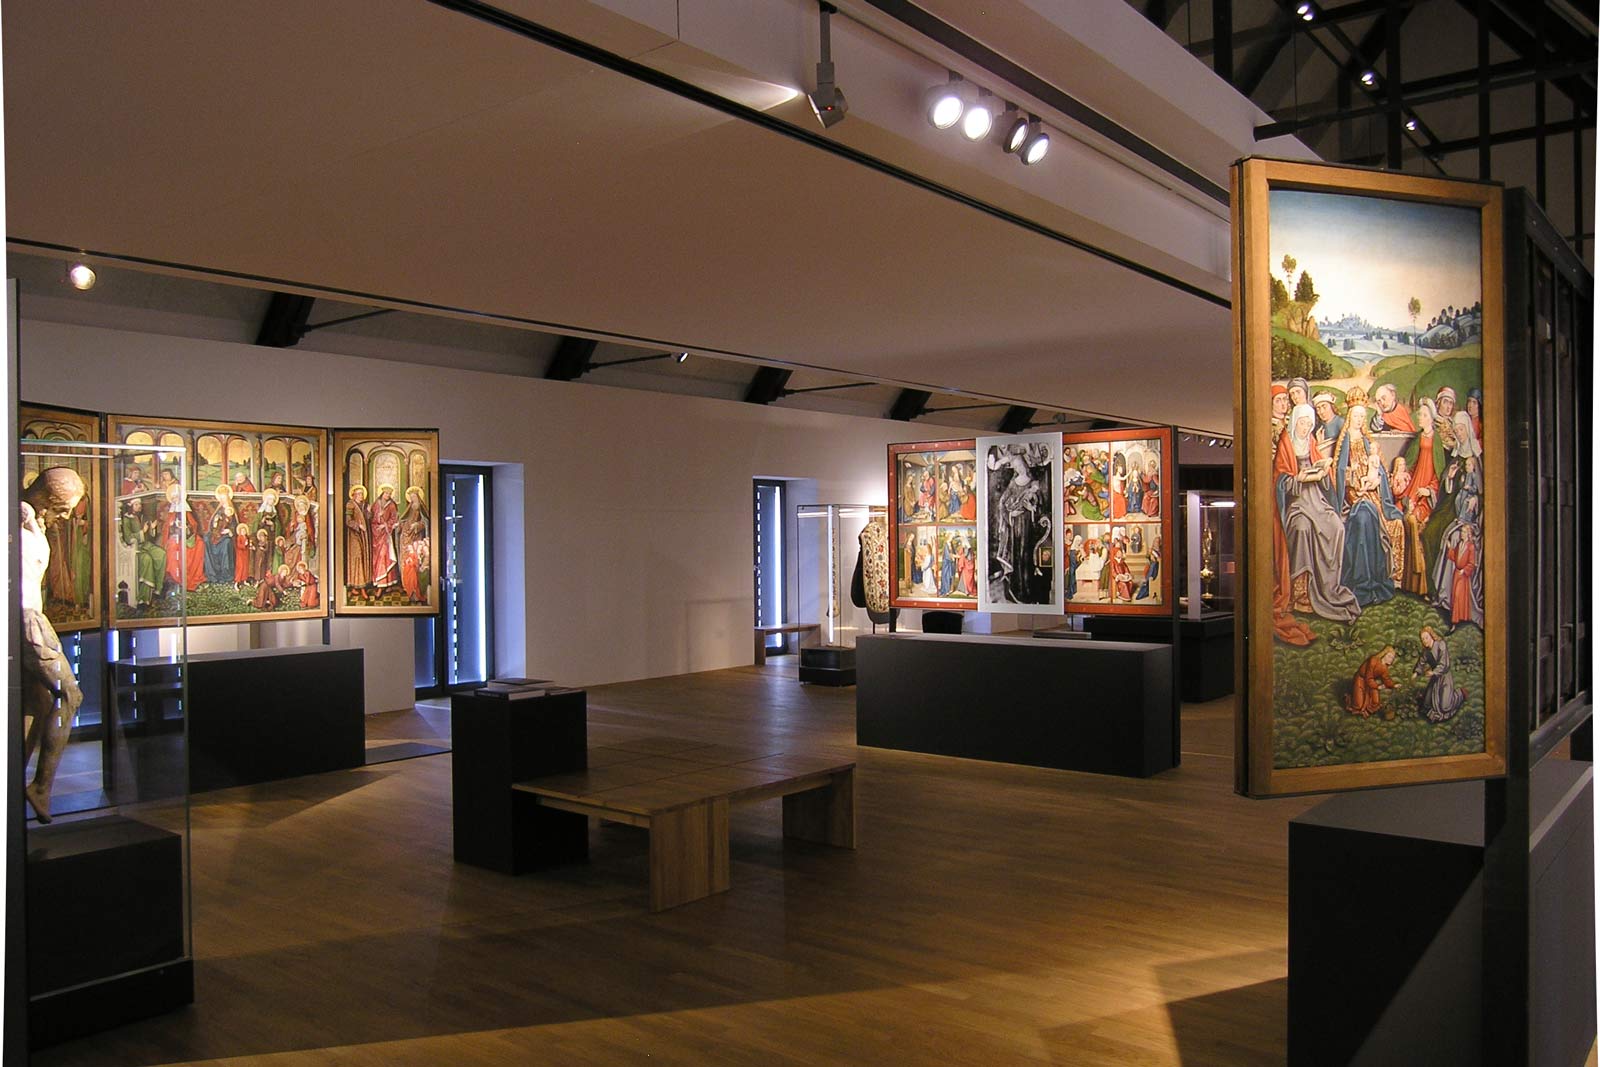 Das Referenzbild für Ausstellungsgestaltung aus der Sonderausstellung „Macht des Wortes“ zeigt eine Exponatpräsentation.